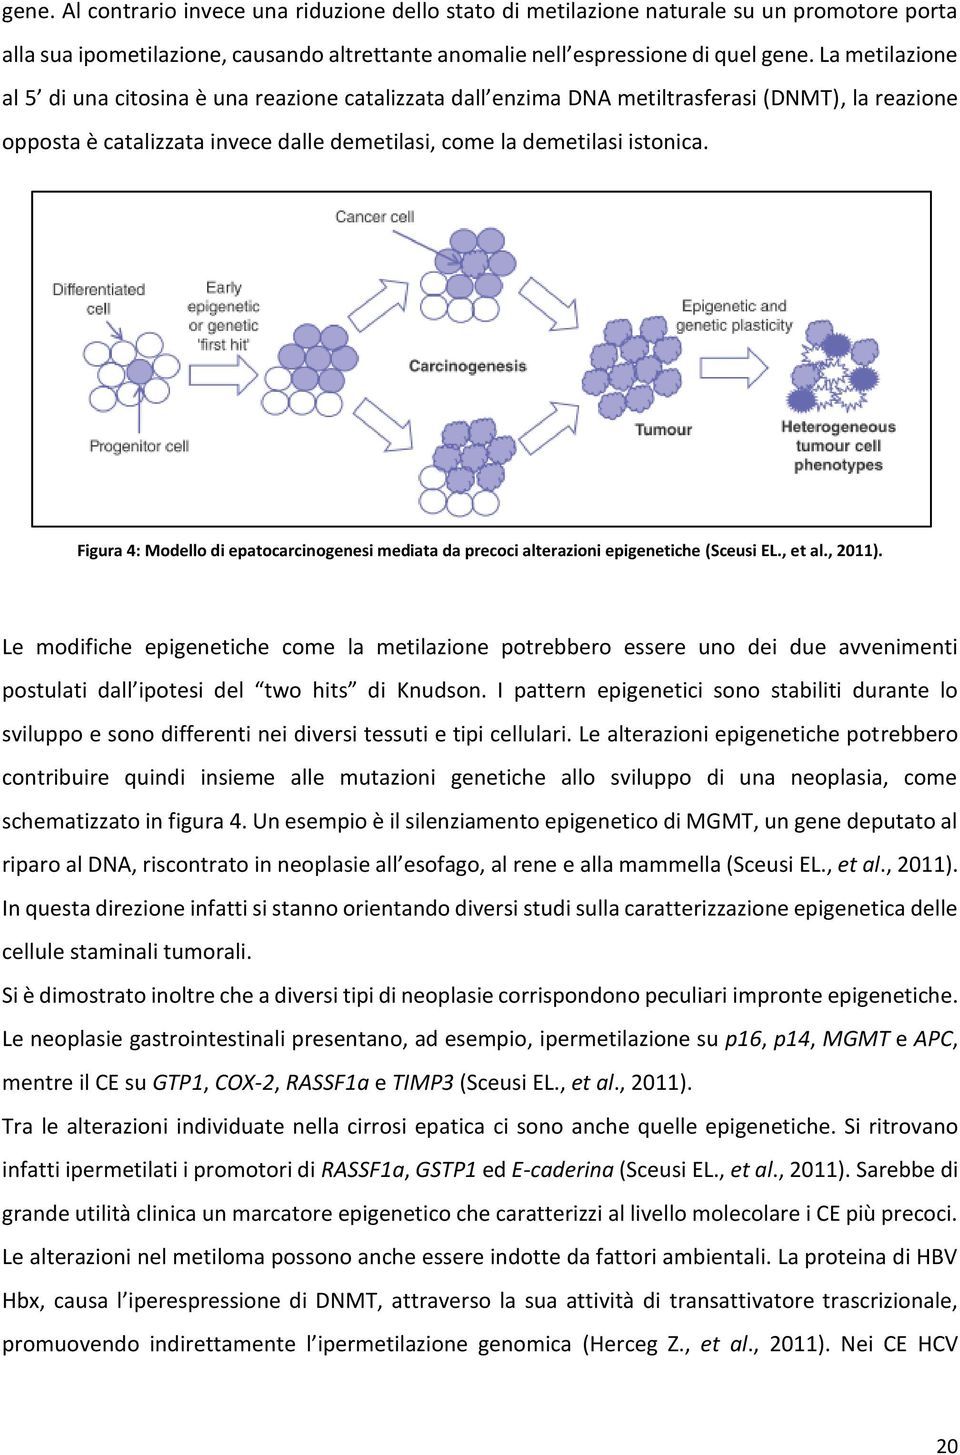 Figura 4: Modello di epatocarcinogenesi mediata da precoci alterazioni epigenetiche (Sceusi EL., et al., 2011).